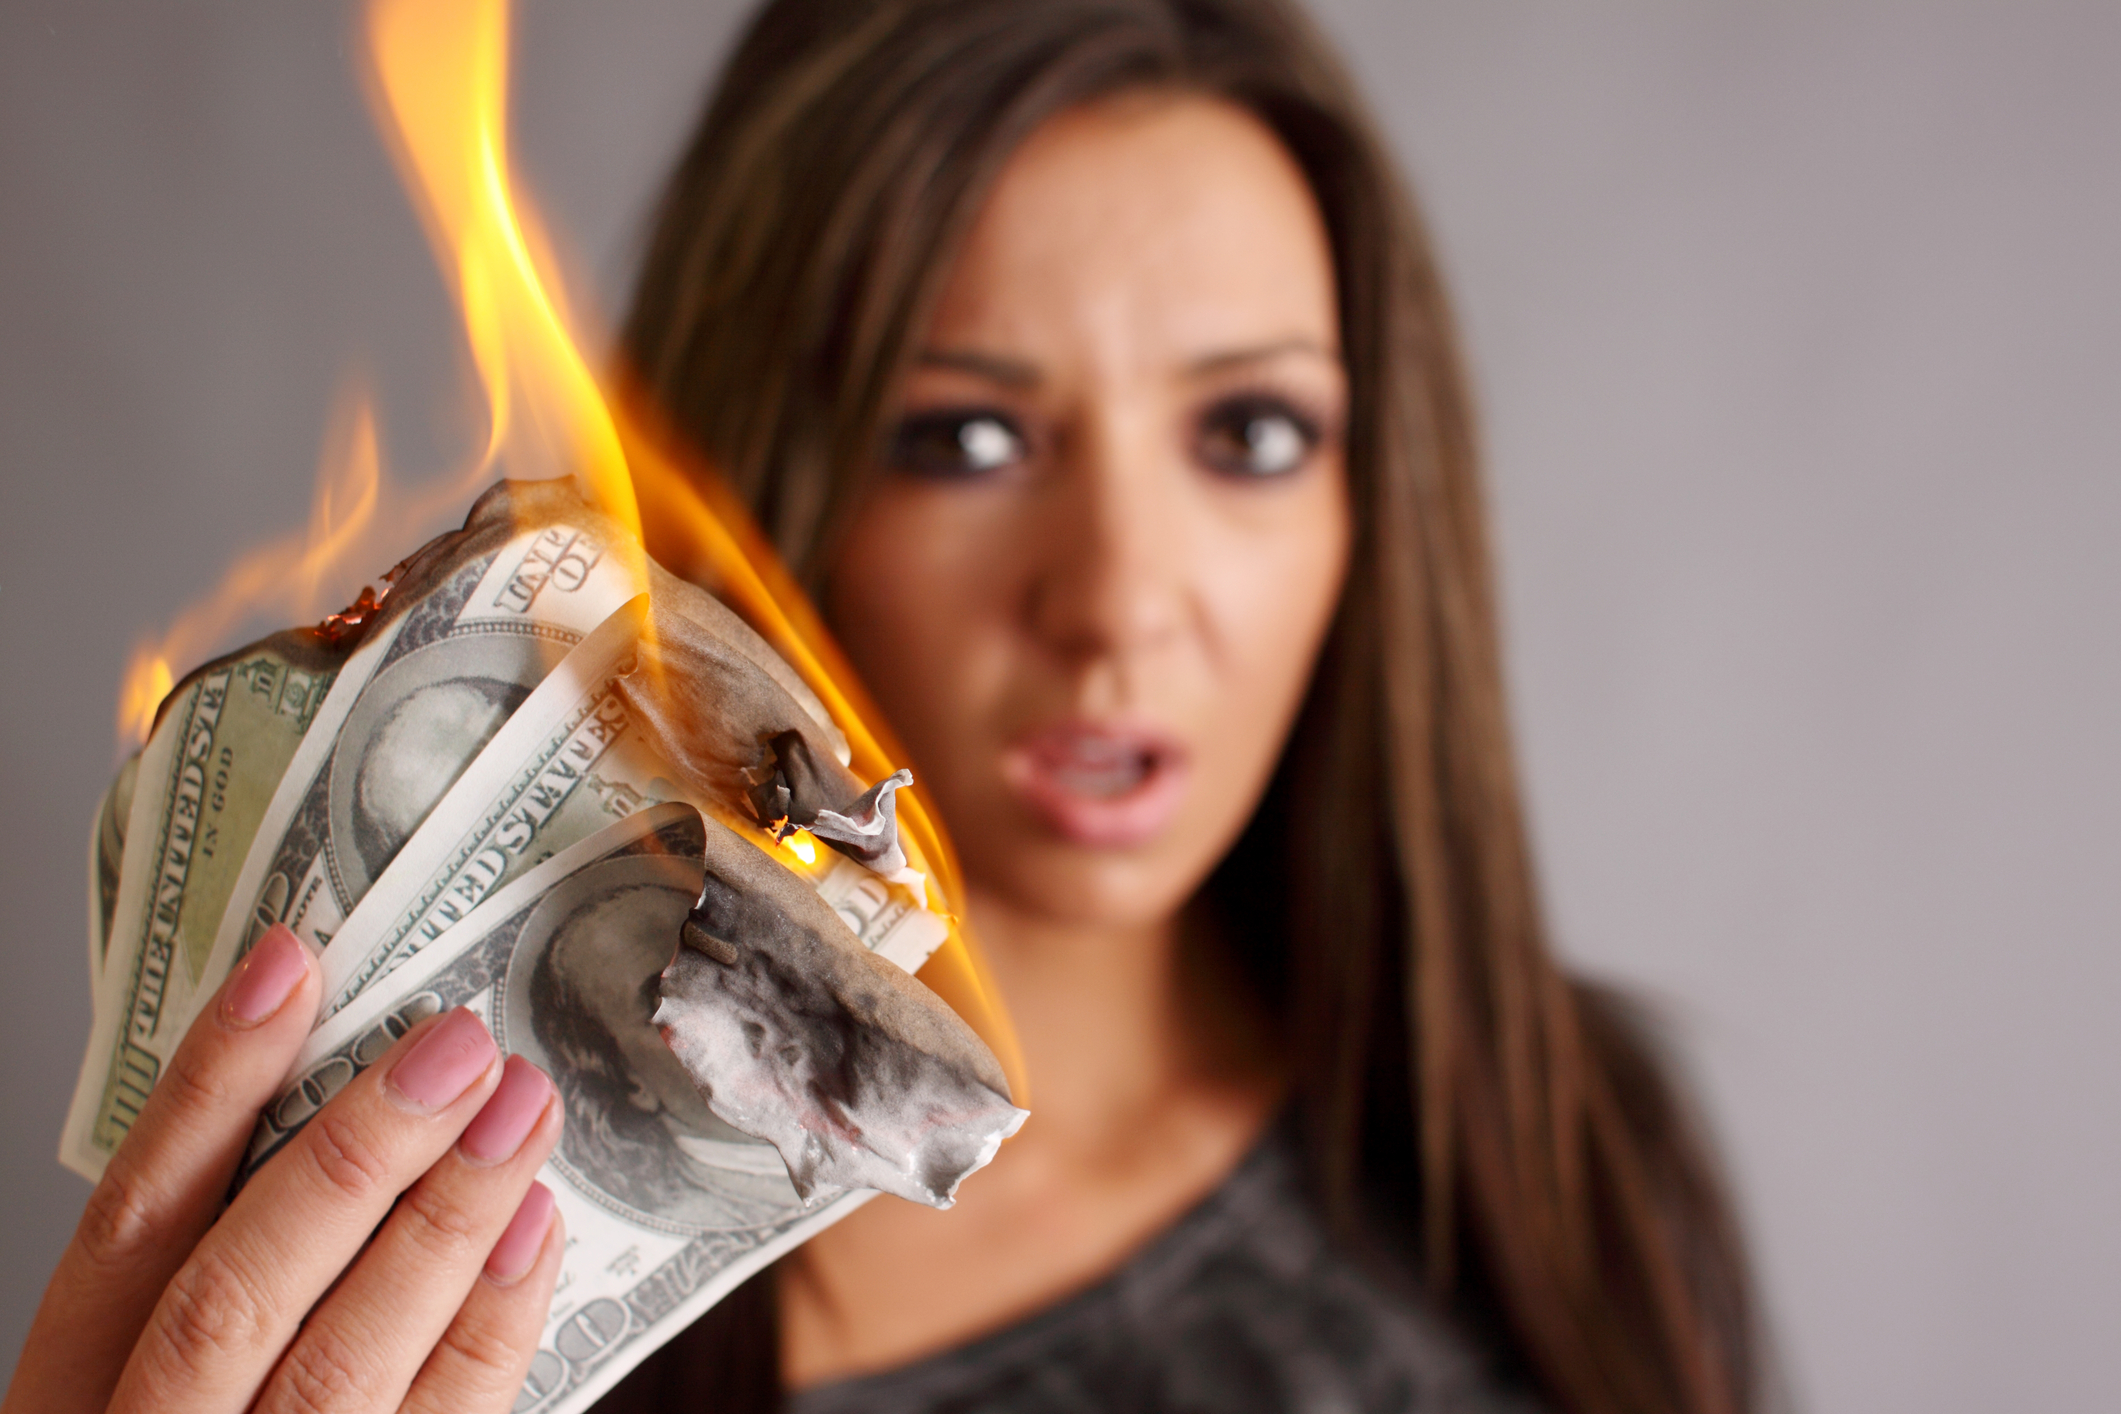 Burning money on practice marketing